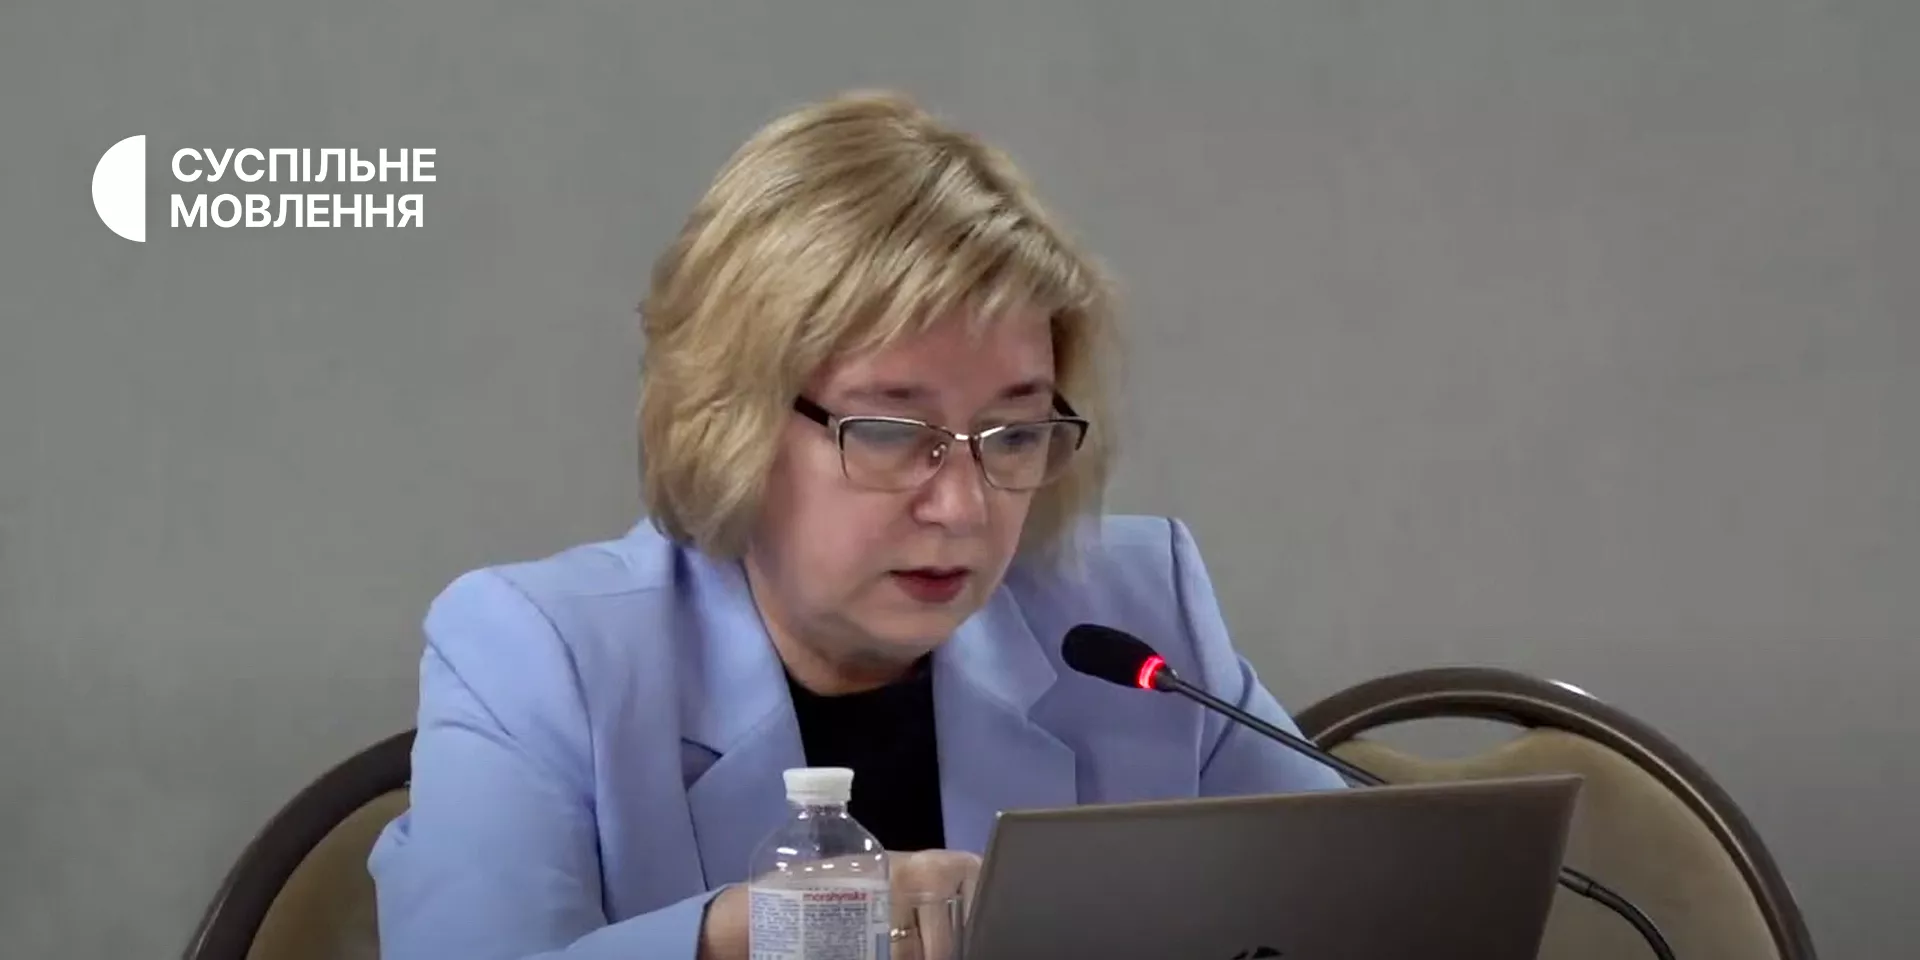 Світлана Остапа: Ми згодні робити телемарафон, але нікому не дамо втручатись у редакційну політику